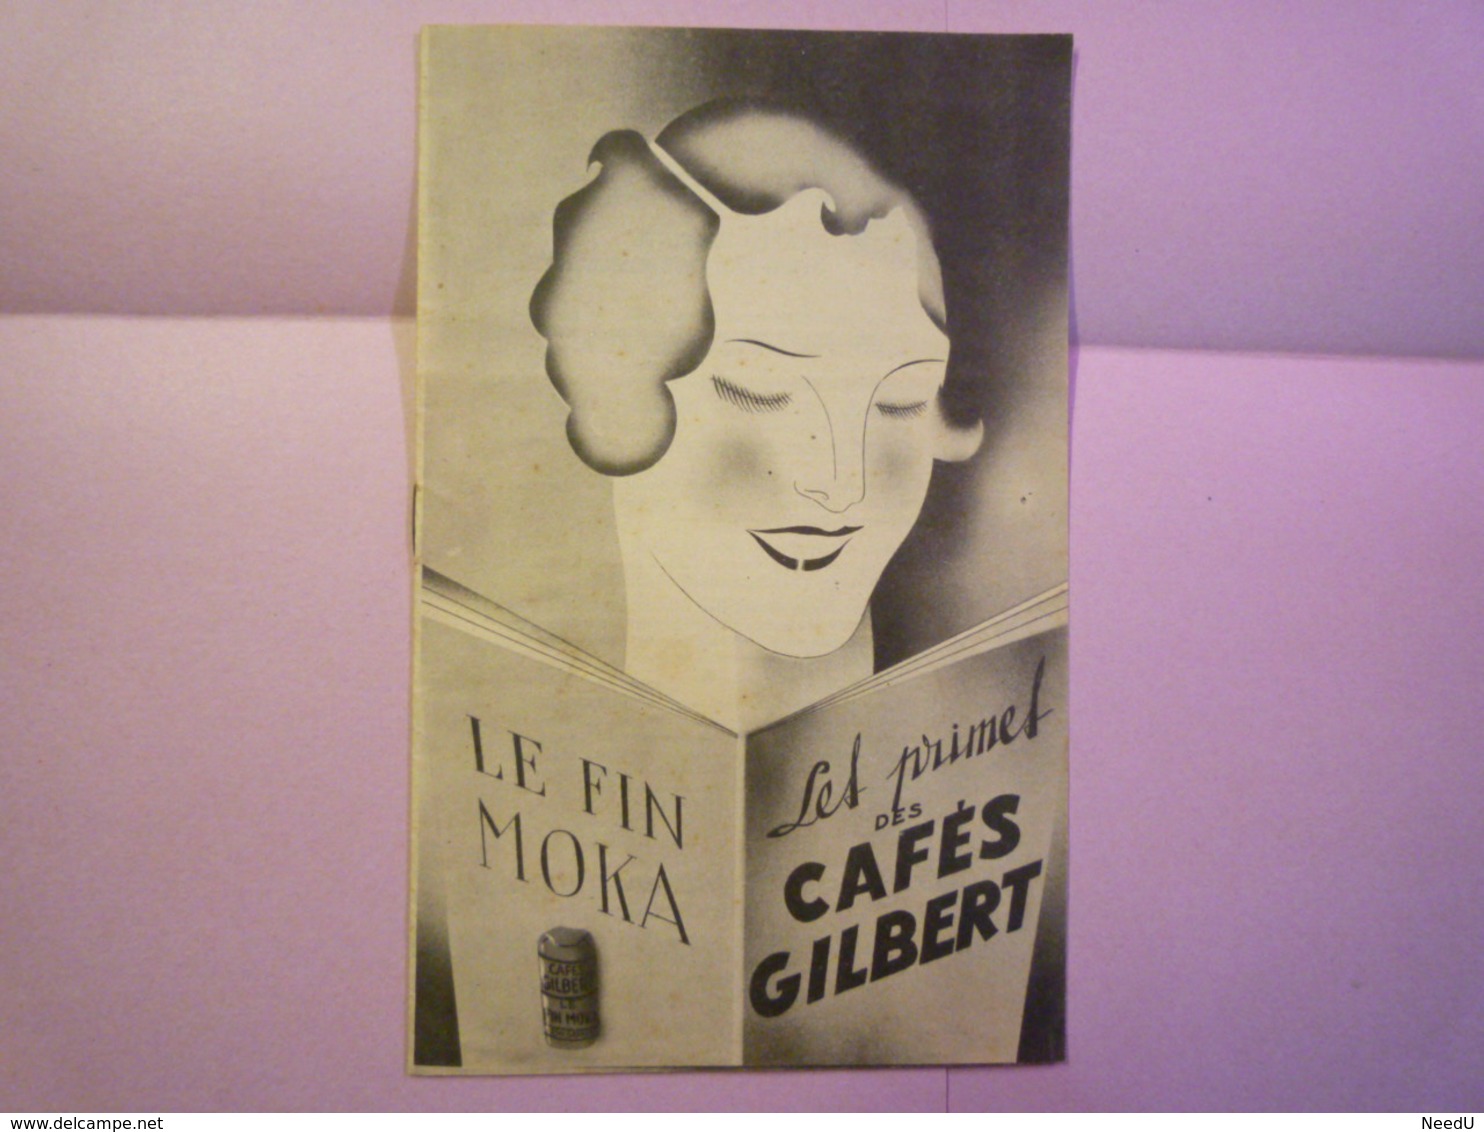 GP 2020 - 2495  Brochure  PUB  "Les PRIMES Des Cafés GILBERT"  12 Pages   XXX - Ohne Zuordnung